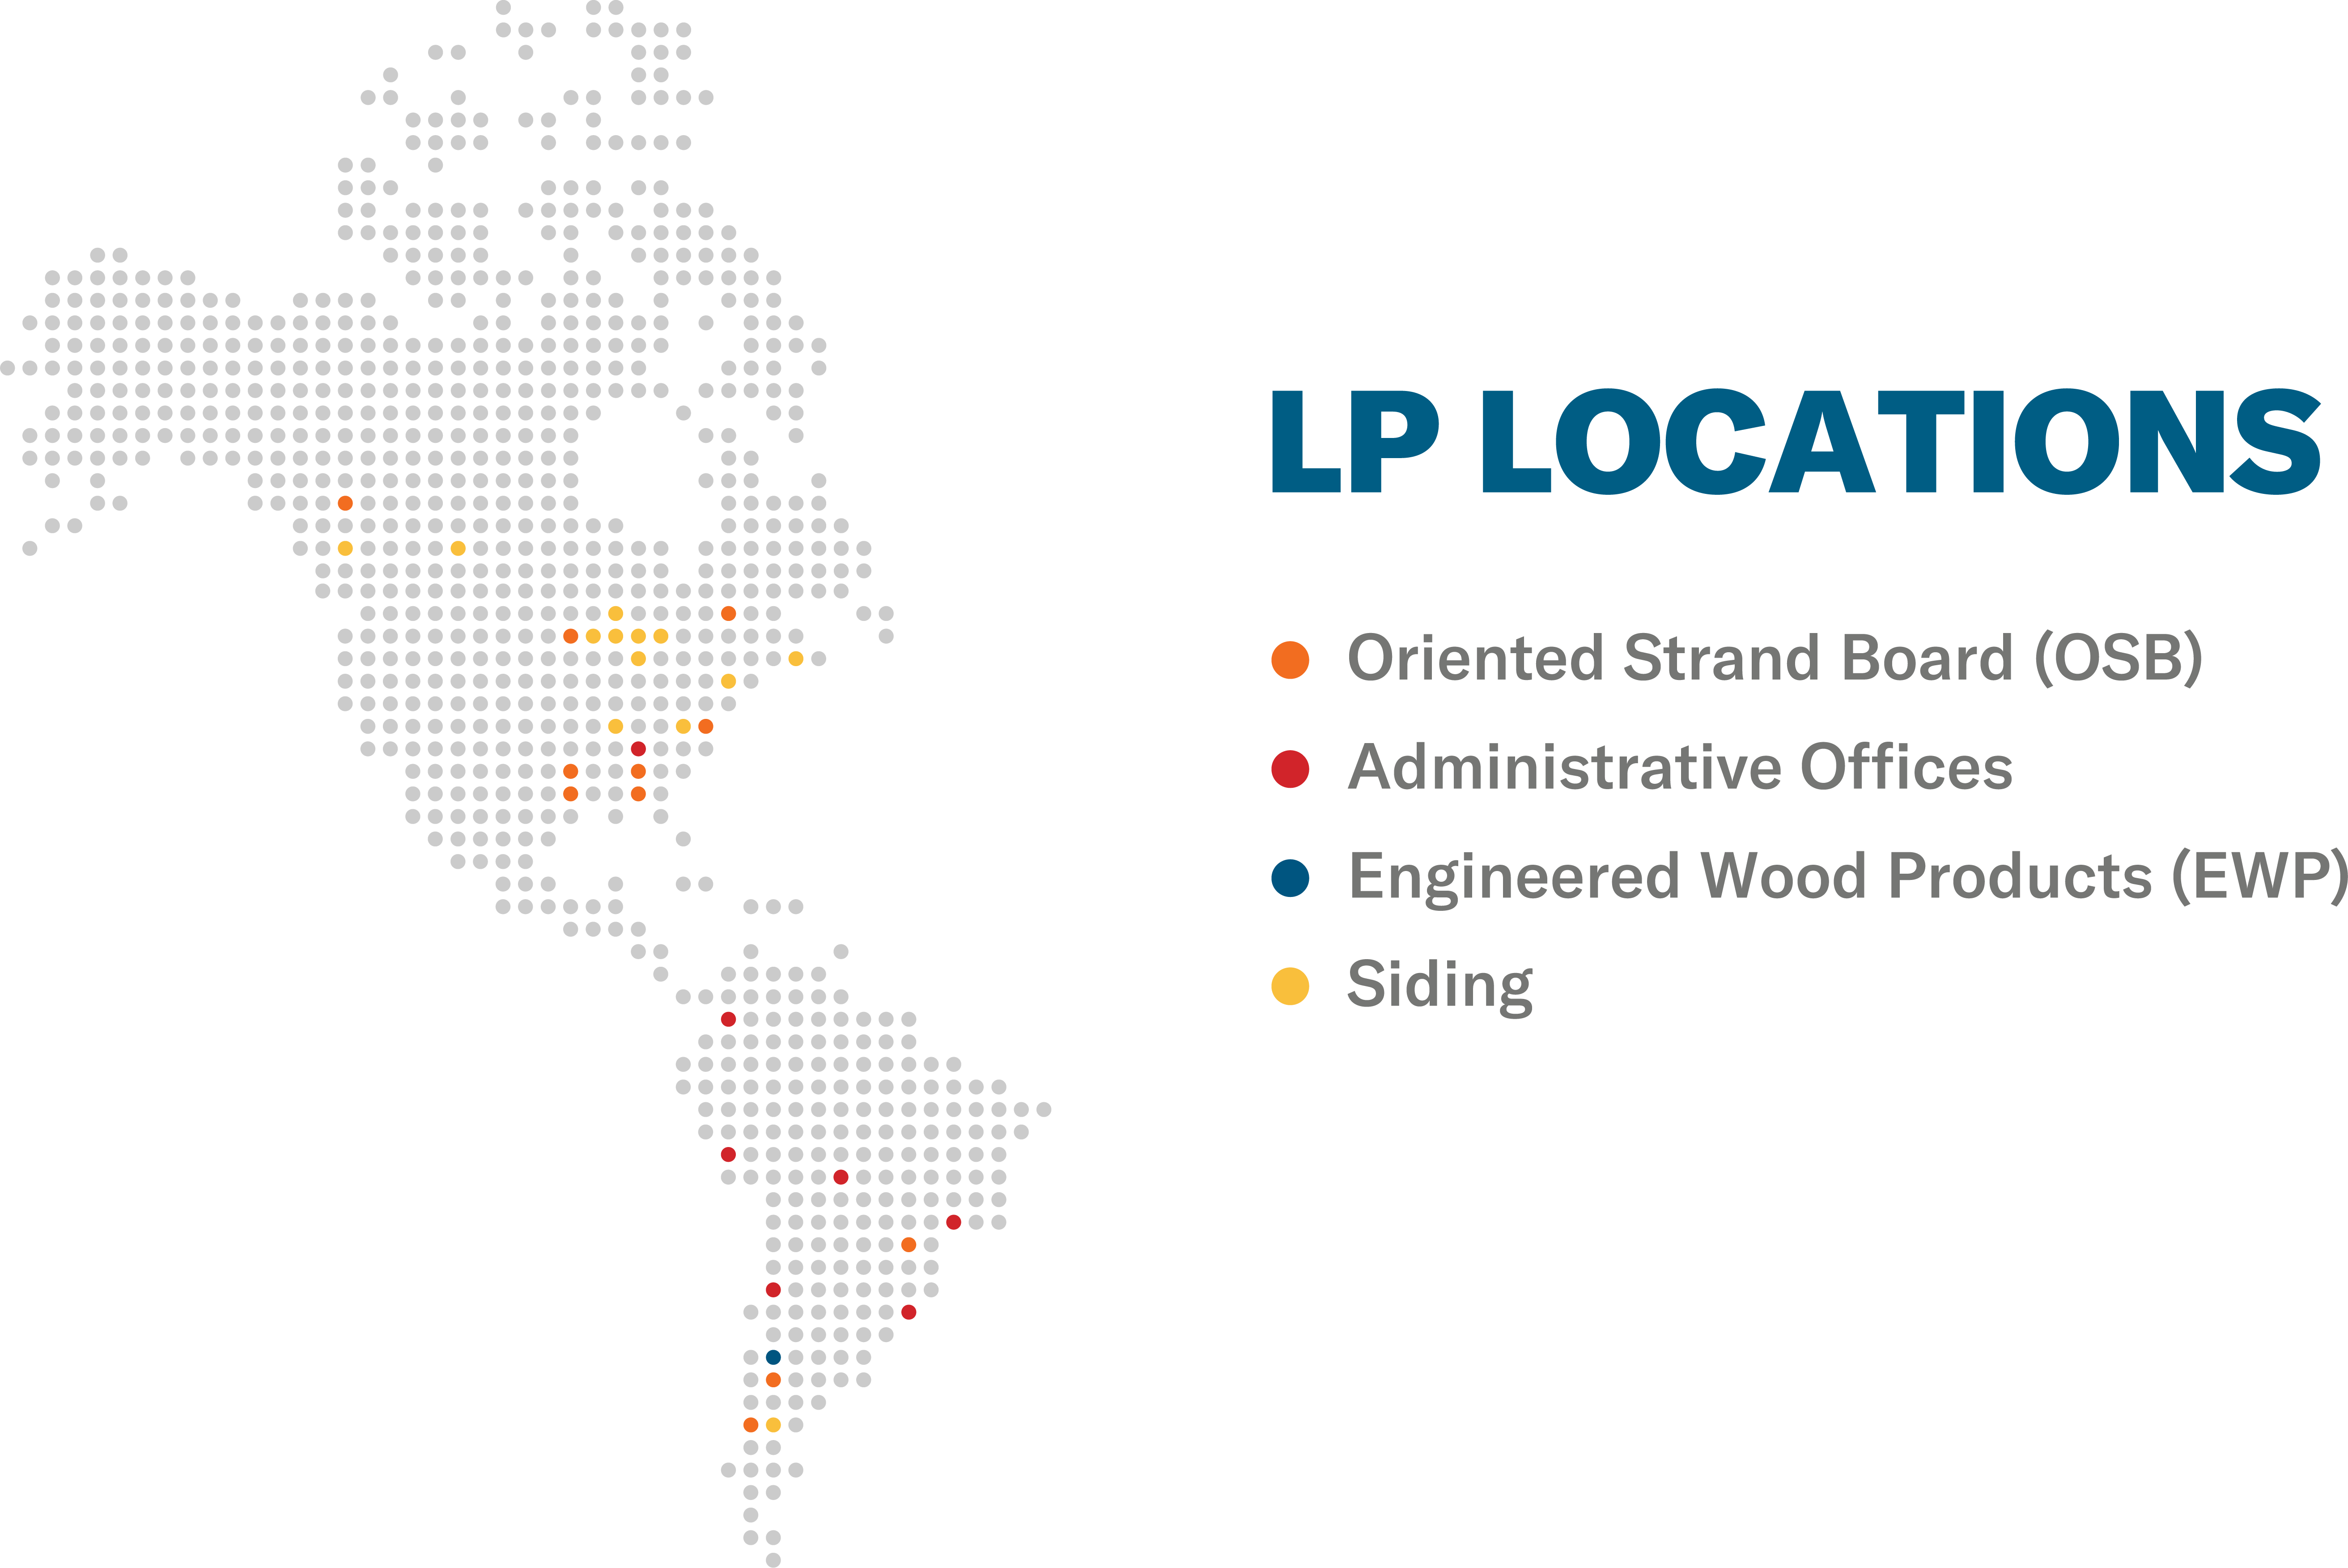 LP locations graphic